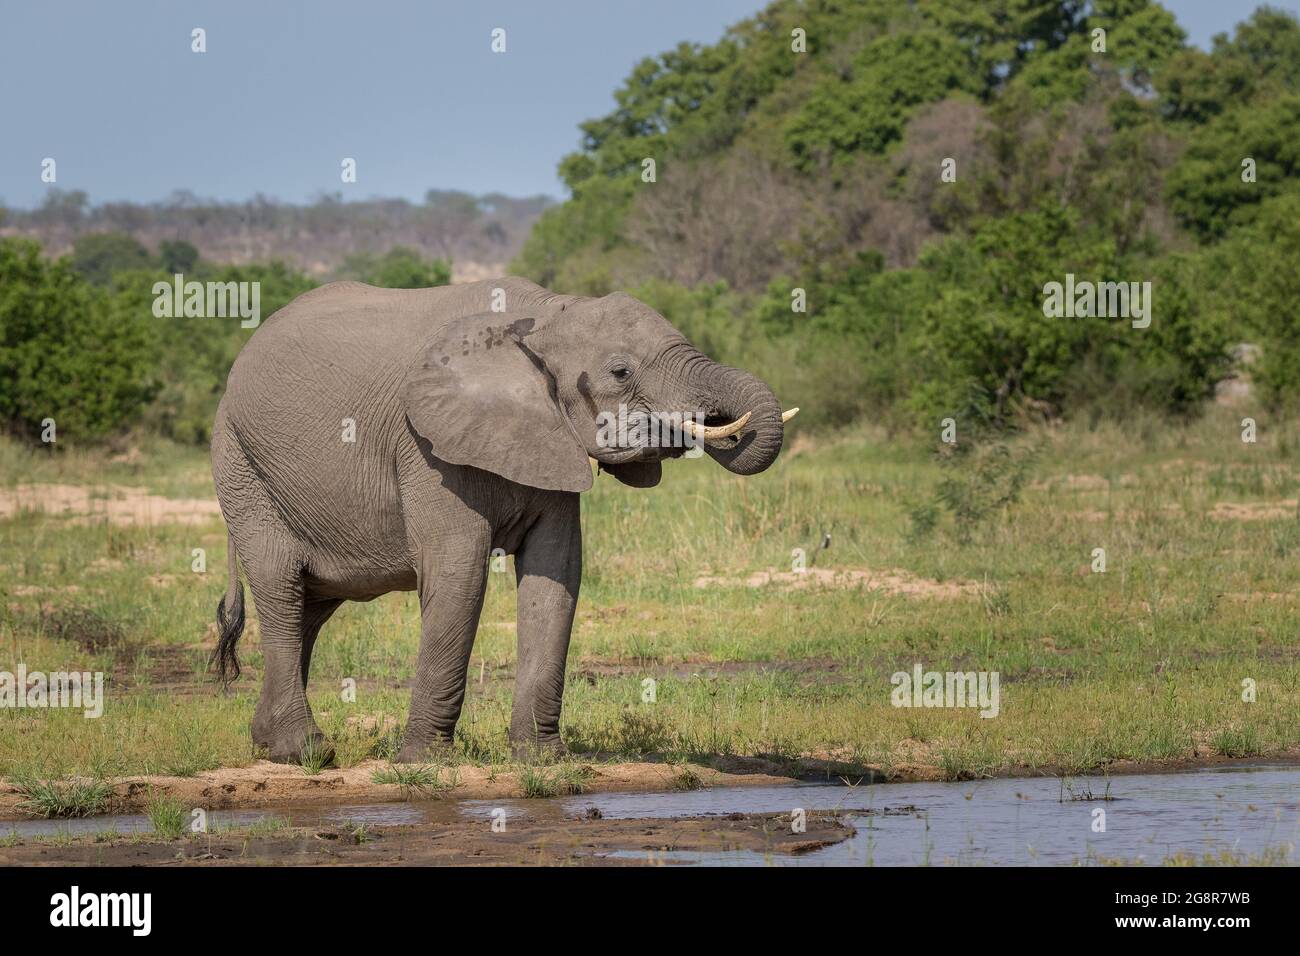 Un éléphant, Loxodonta africana, boit de l'eau depuis le bord de la rivière. Du tronc à la bouche. Banque D'Images